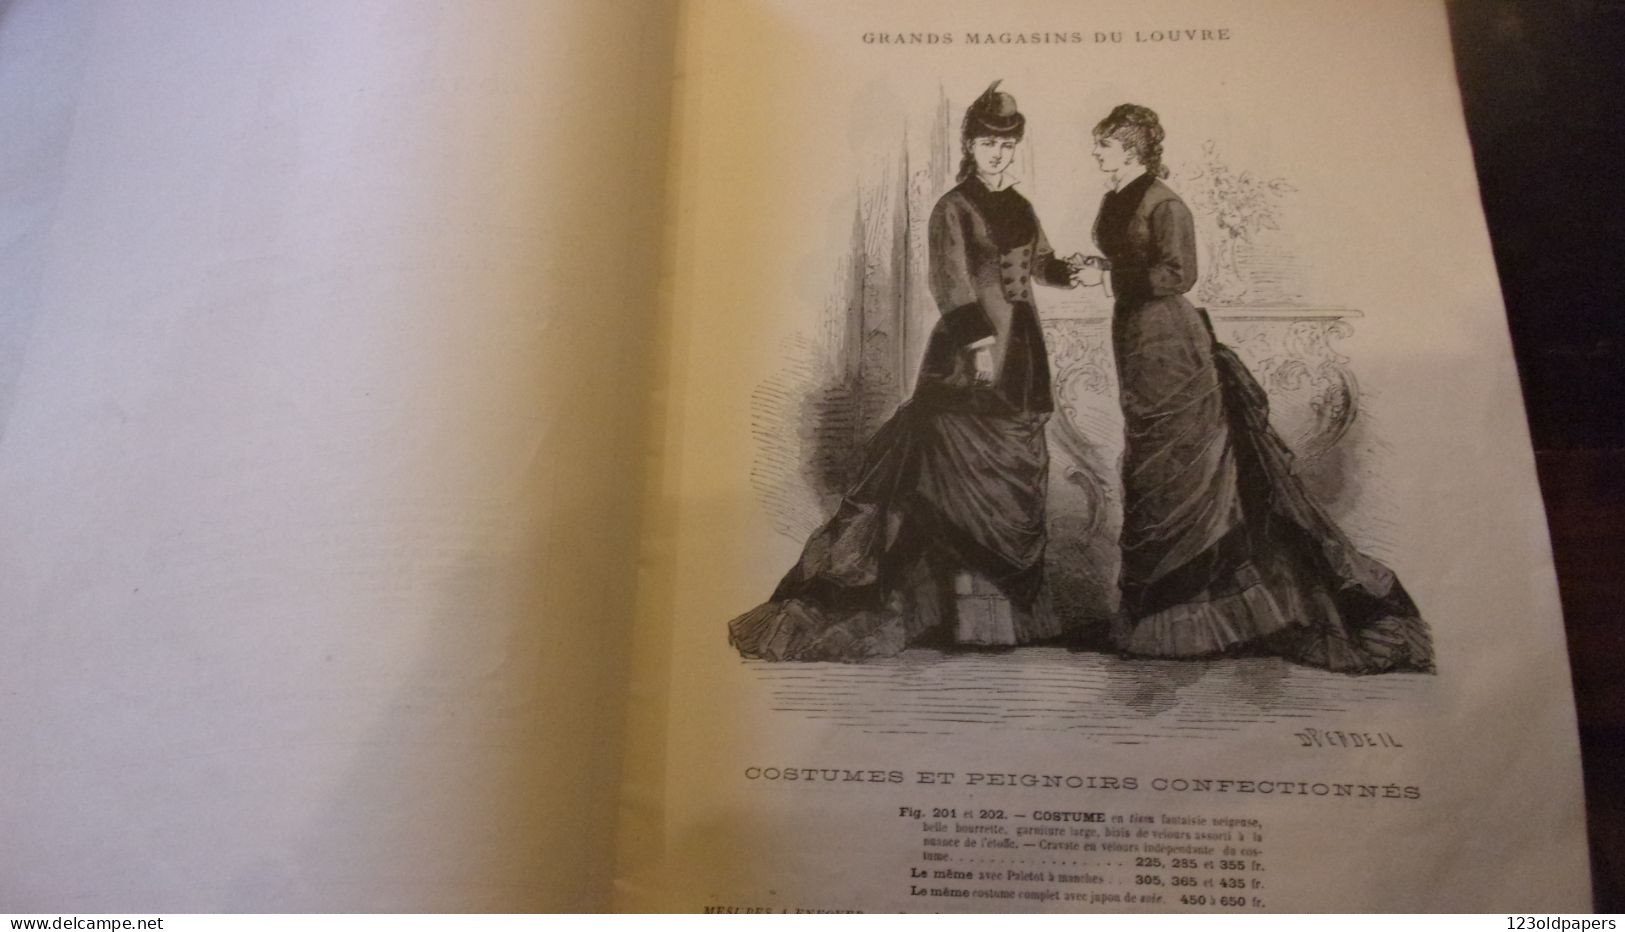 ️ RARE 1877 / 78 Catalogue Grands Magasins Du Louvre Paris COSTUMES PEIGNOIRS CONFECTIONNES  HIVER - Fashion